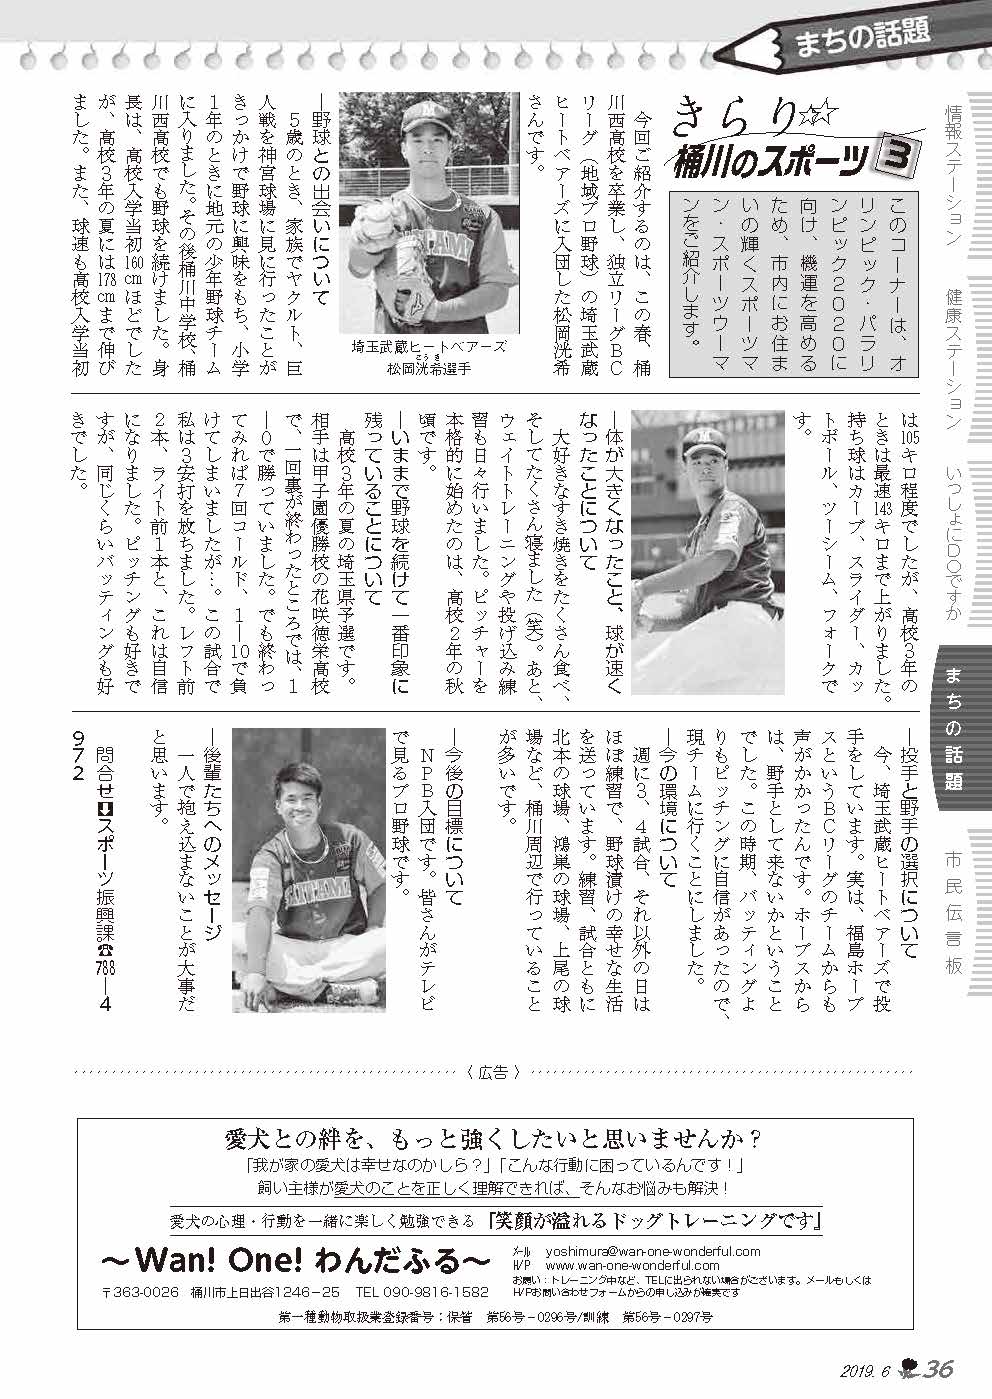 広報おけがわ6月号「きらり桶川のスポーツ」松岡選手の記事の画像